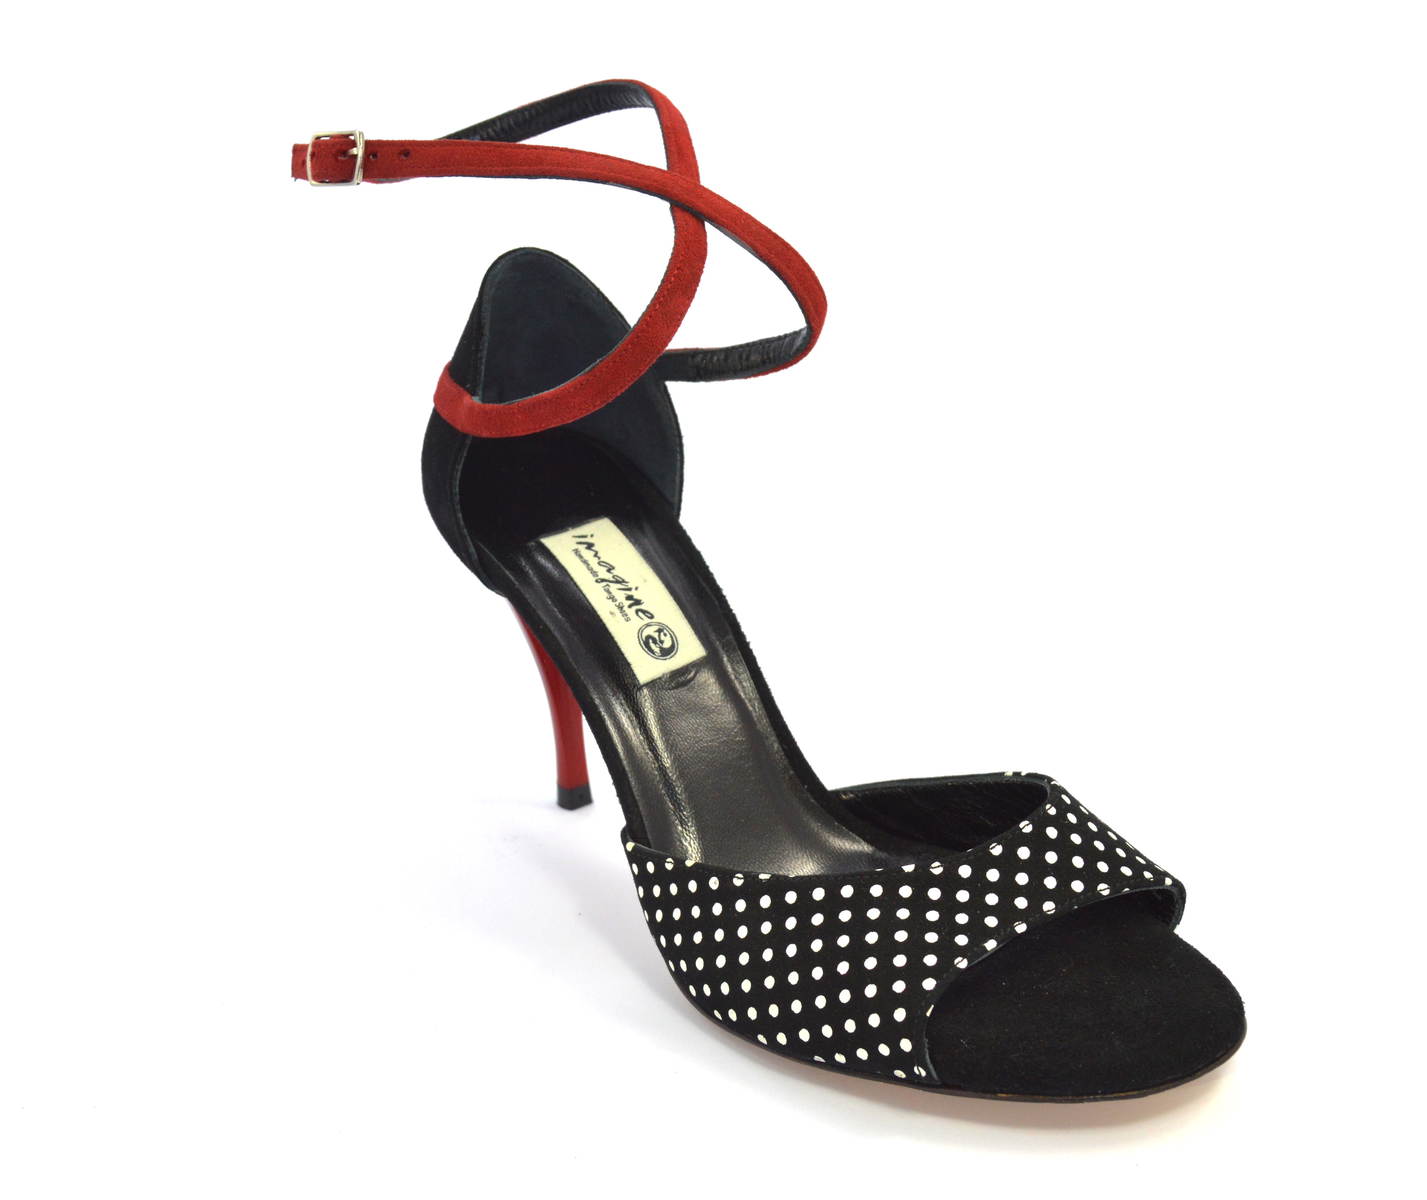 Γυναικείο παπούτσι tango open toe από μαύρο και κόκκινο σουέτ δέρμα και ασπρόμαυρο πουά